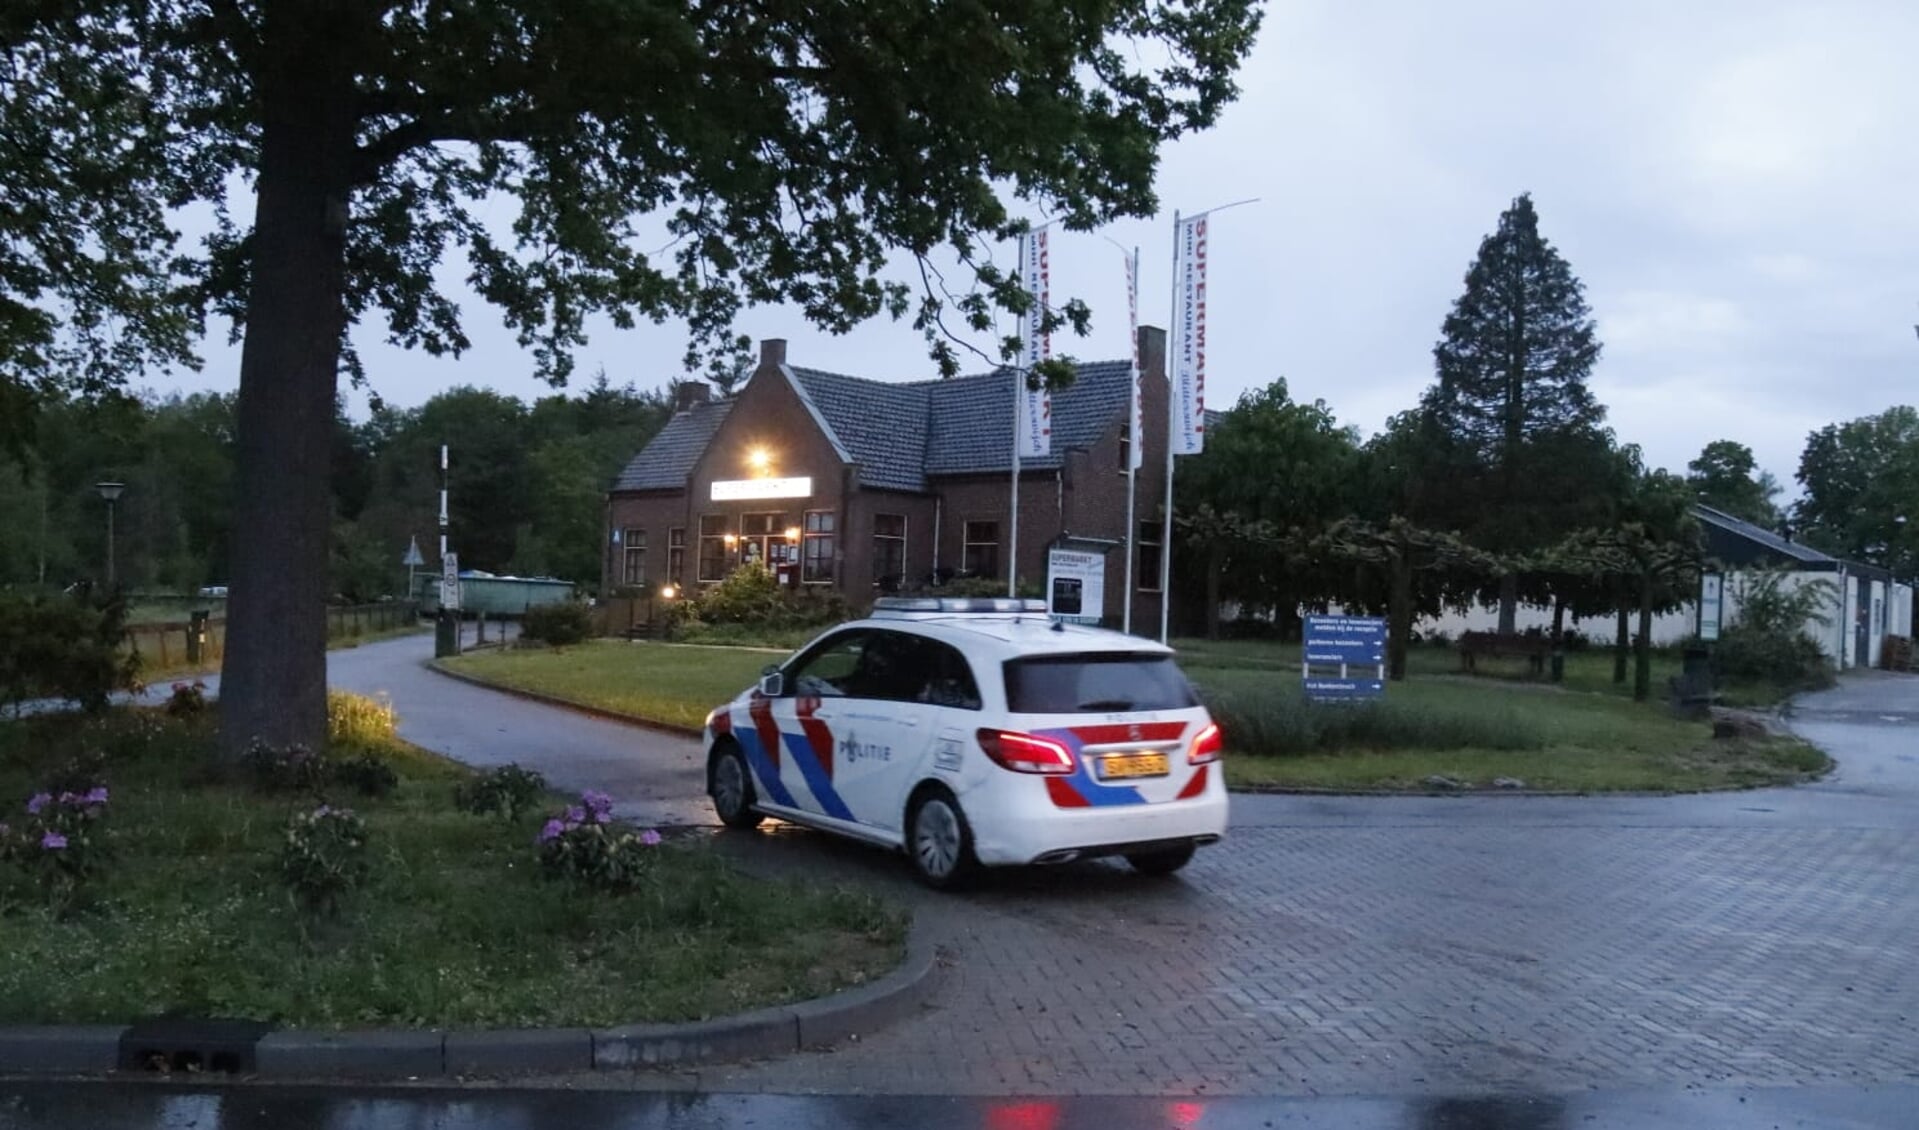 De politie heeft maandagavond een verdachte aangehouden die betrokken was bij een steekincident aan de Ooijenseweg in Blitterswijck. 